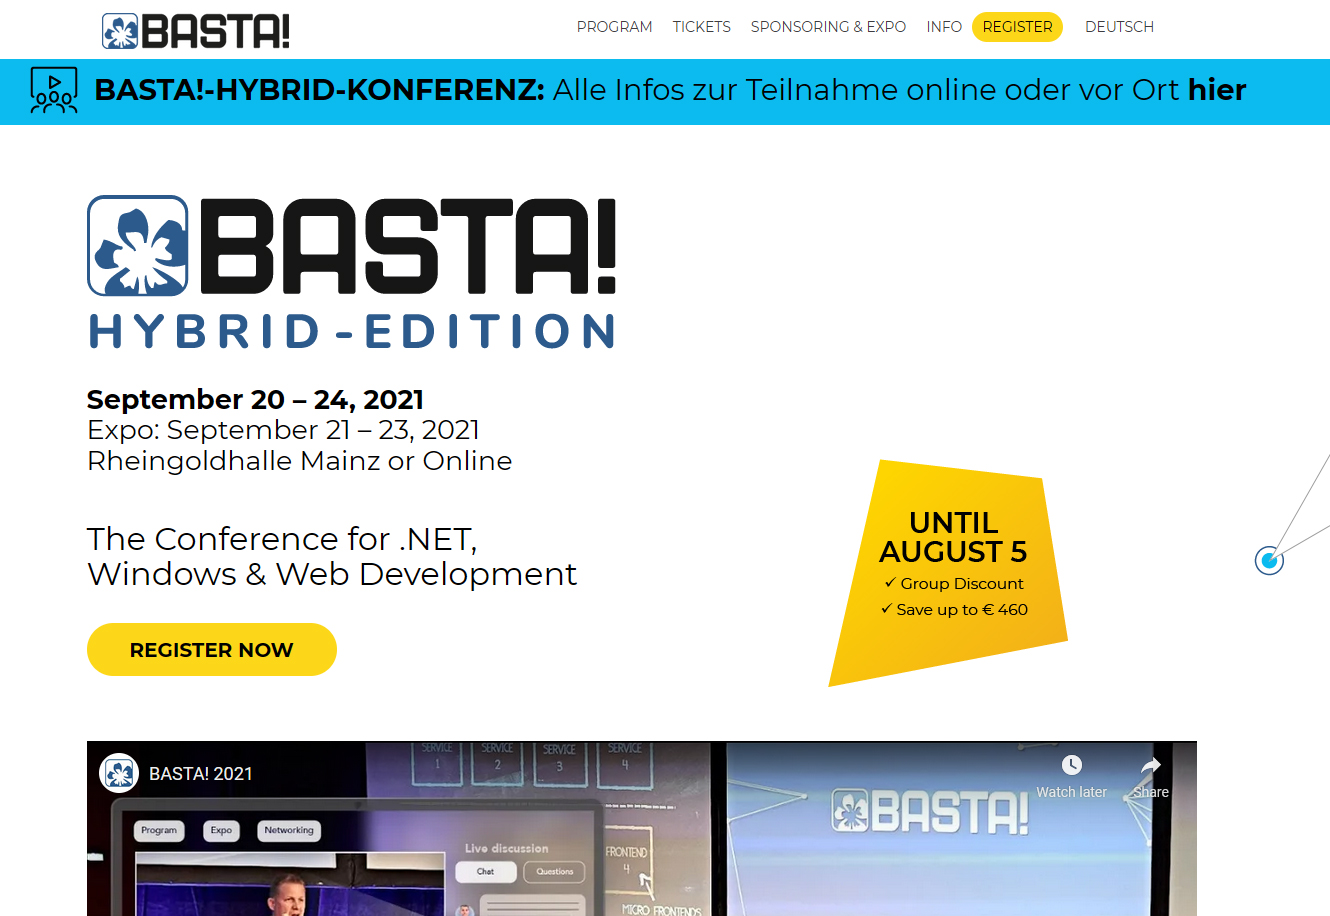 BASTA! website